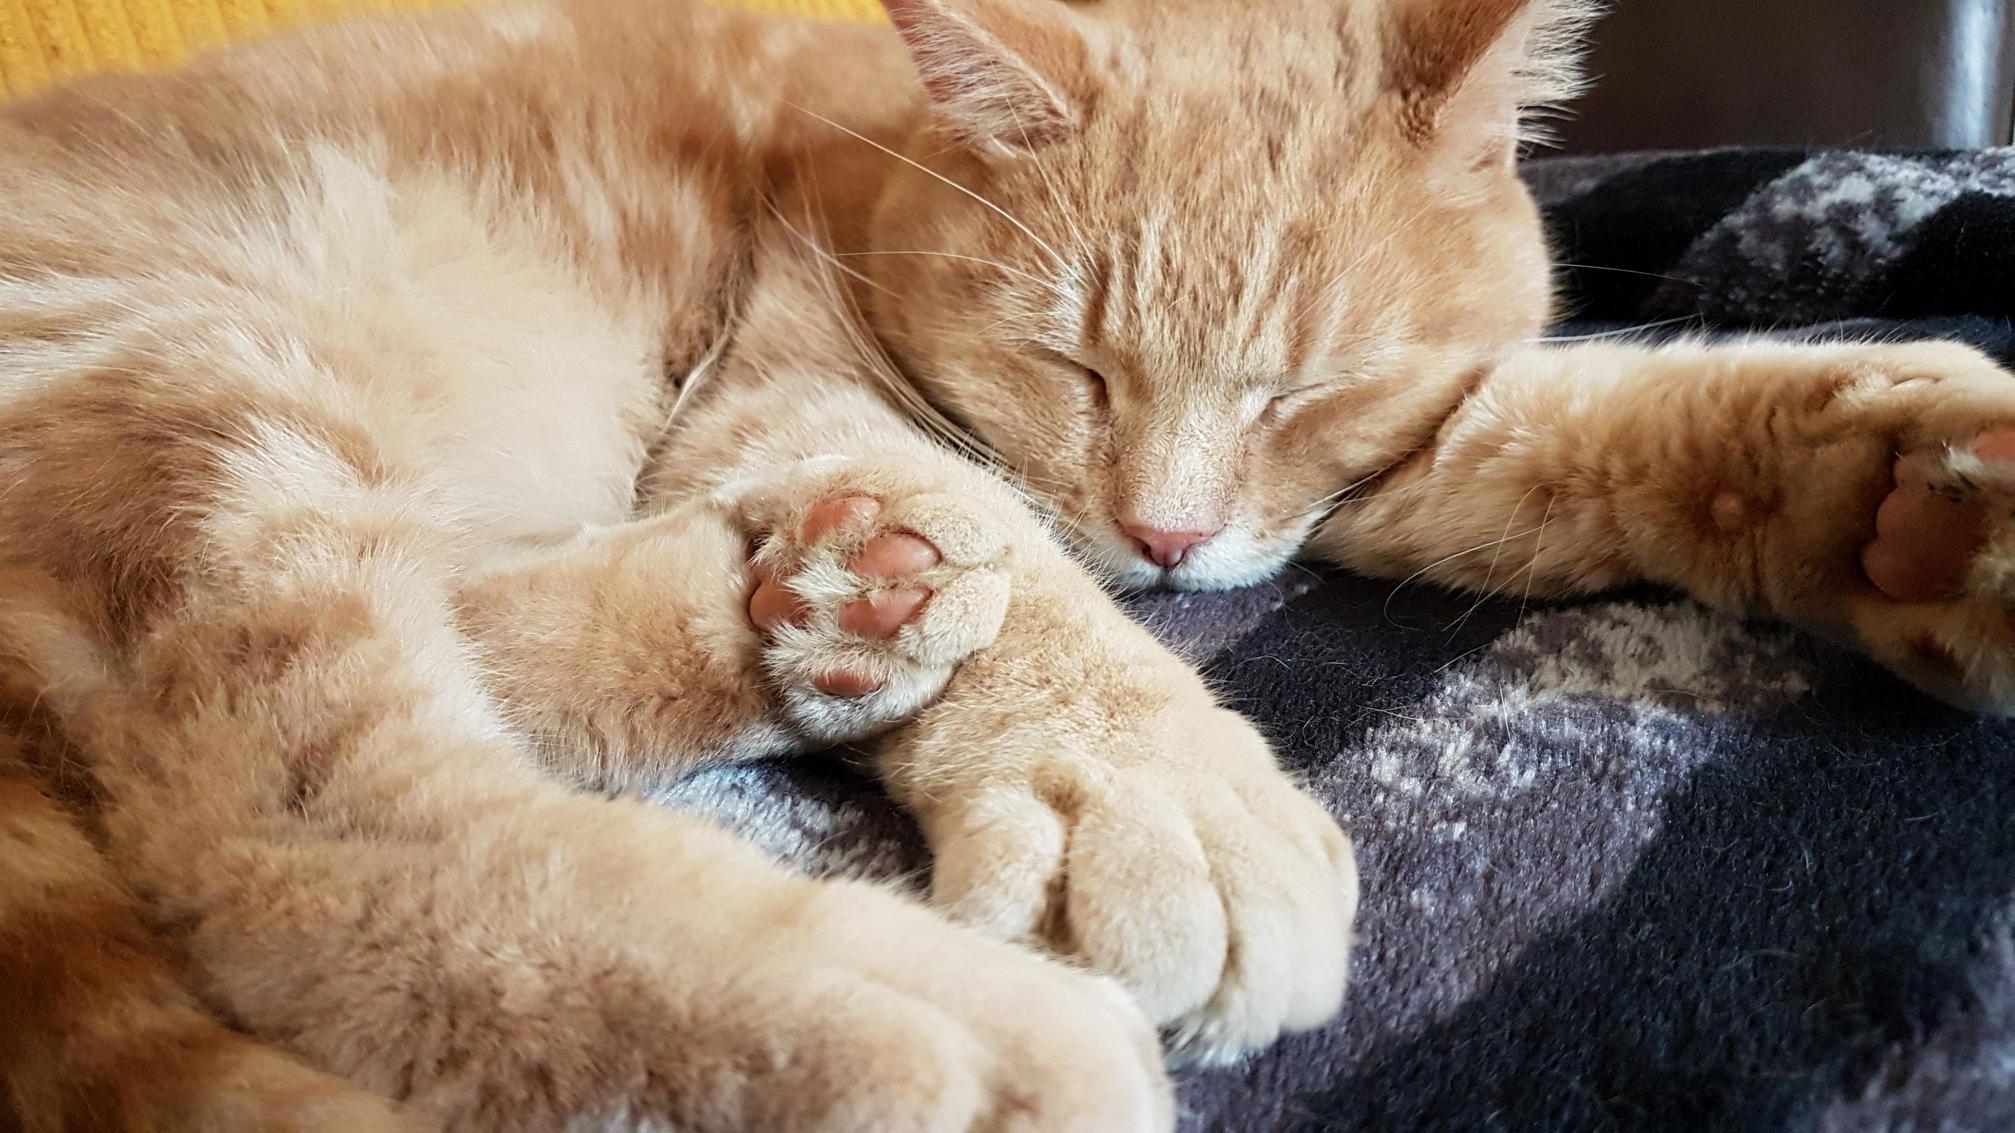 Arthur is a sleeping lion